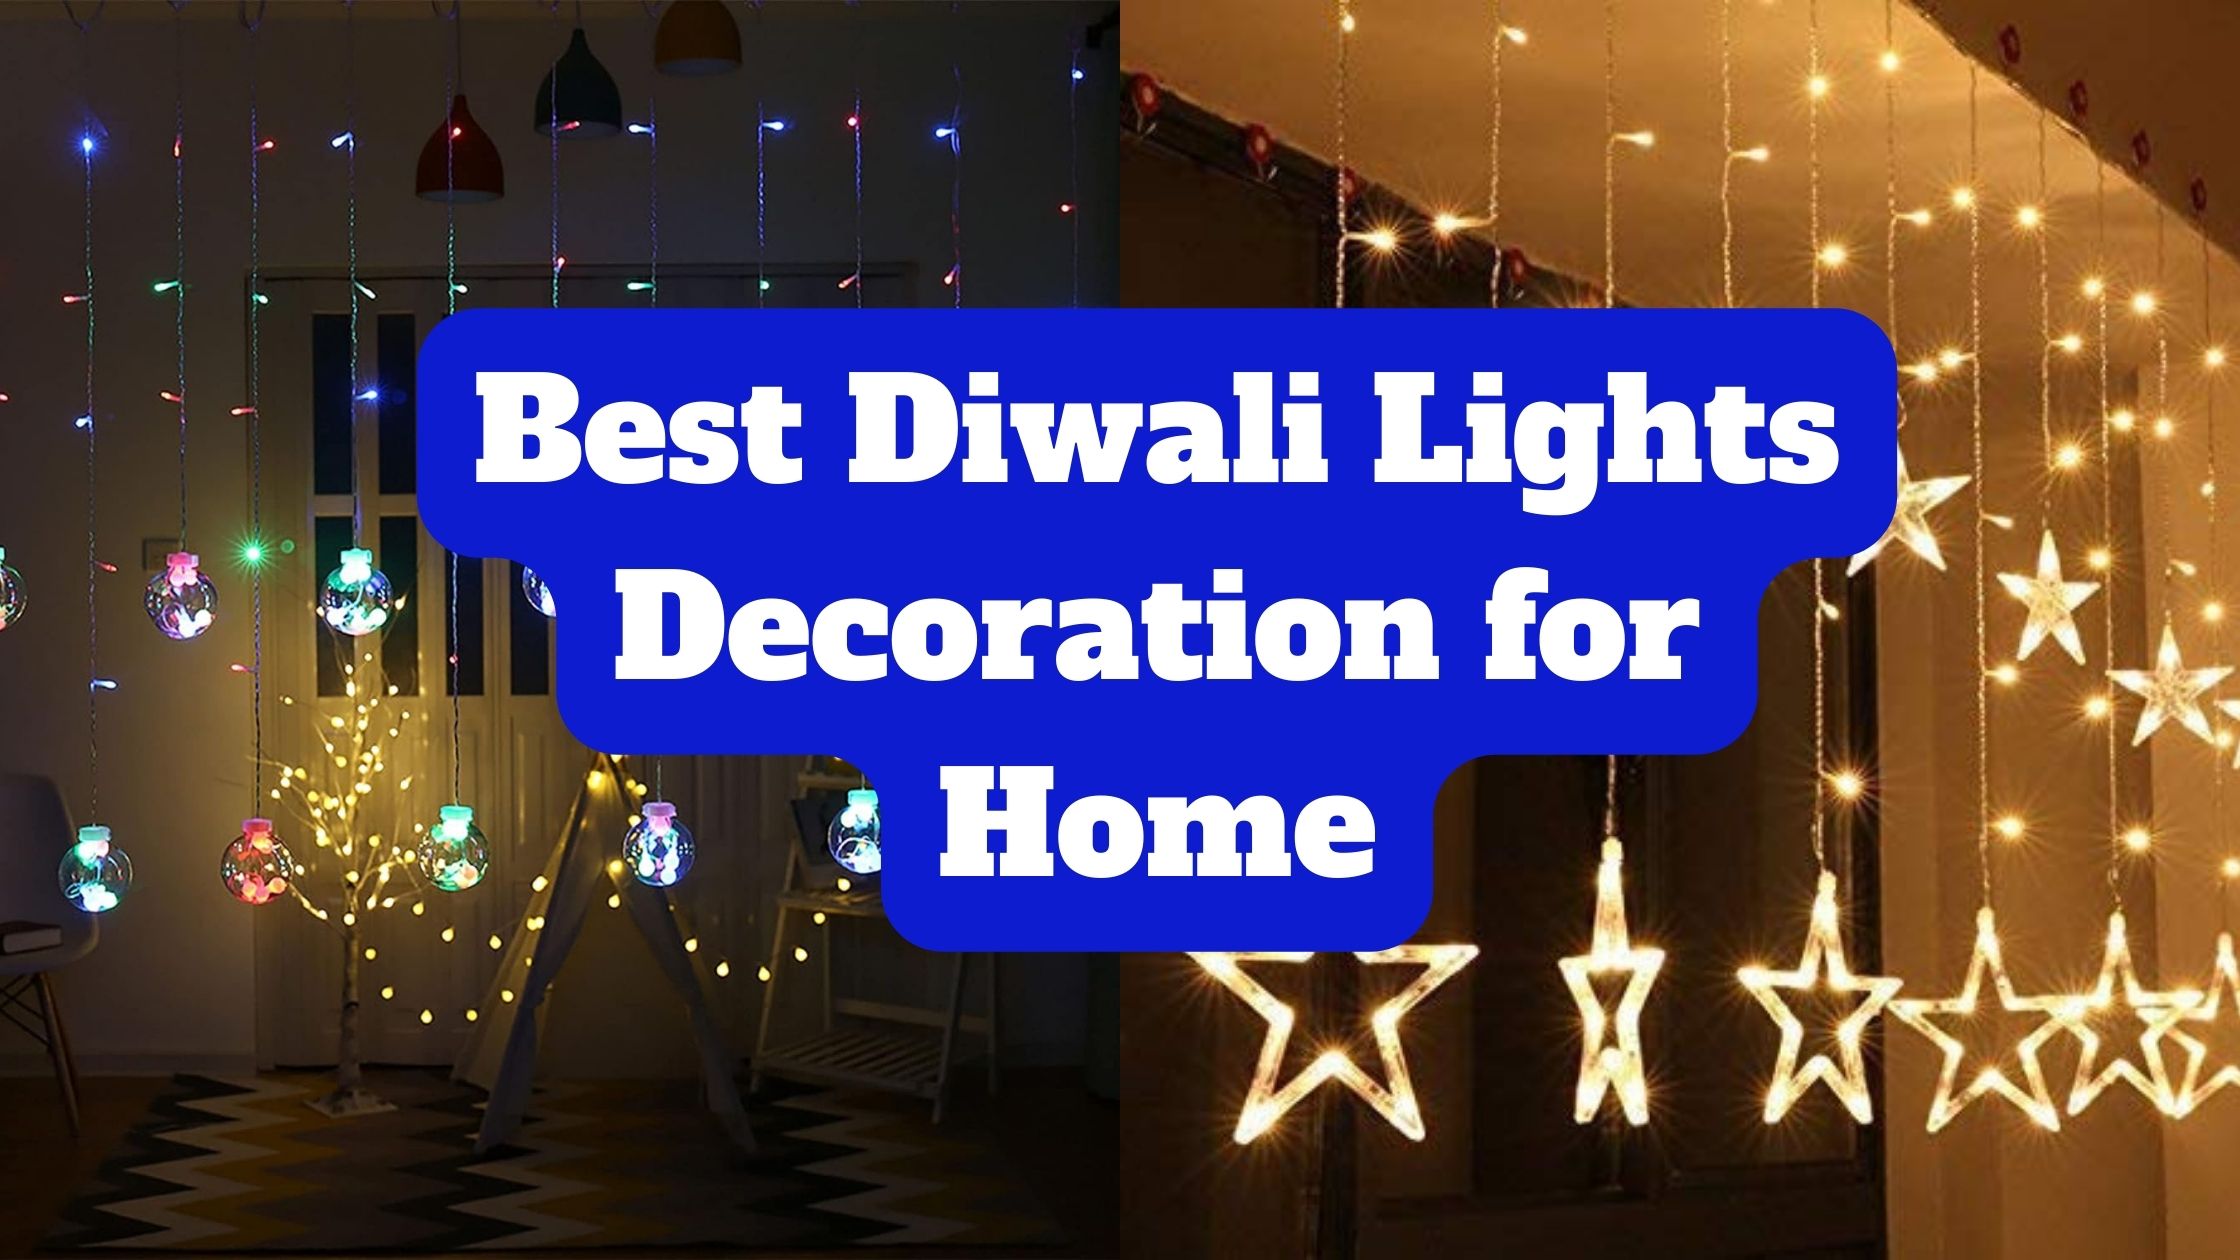 Best Diwali Lights Decoration for Home